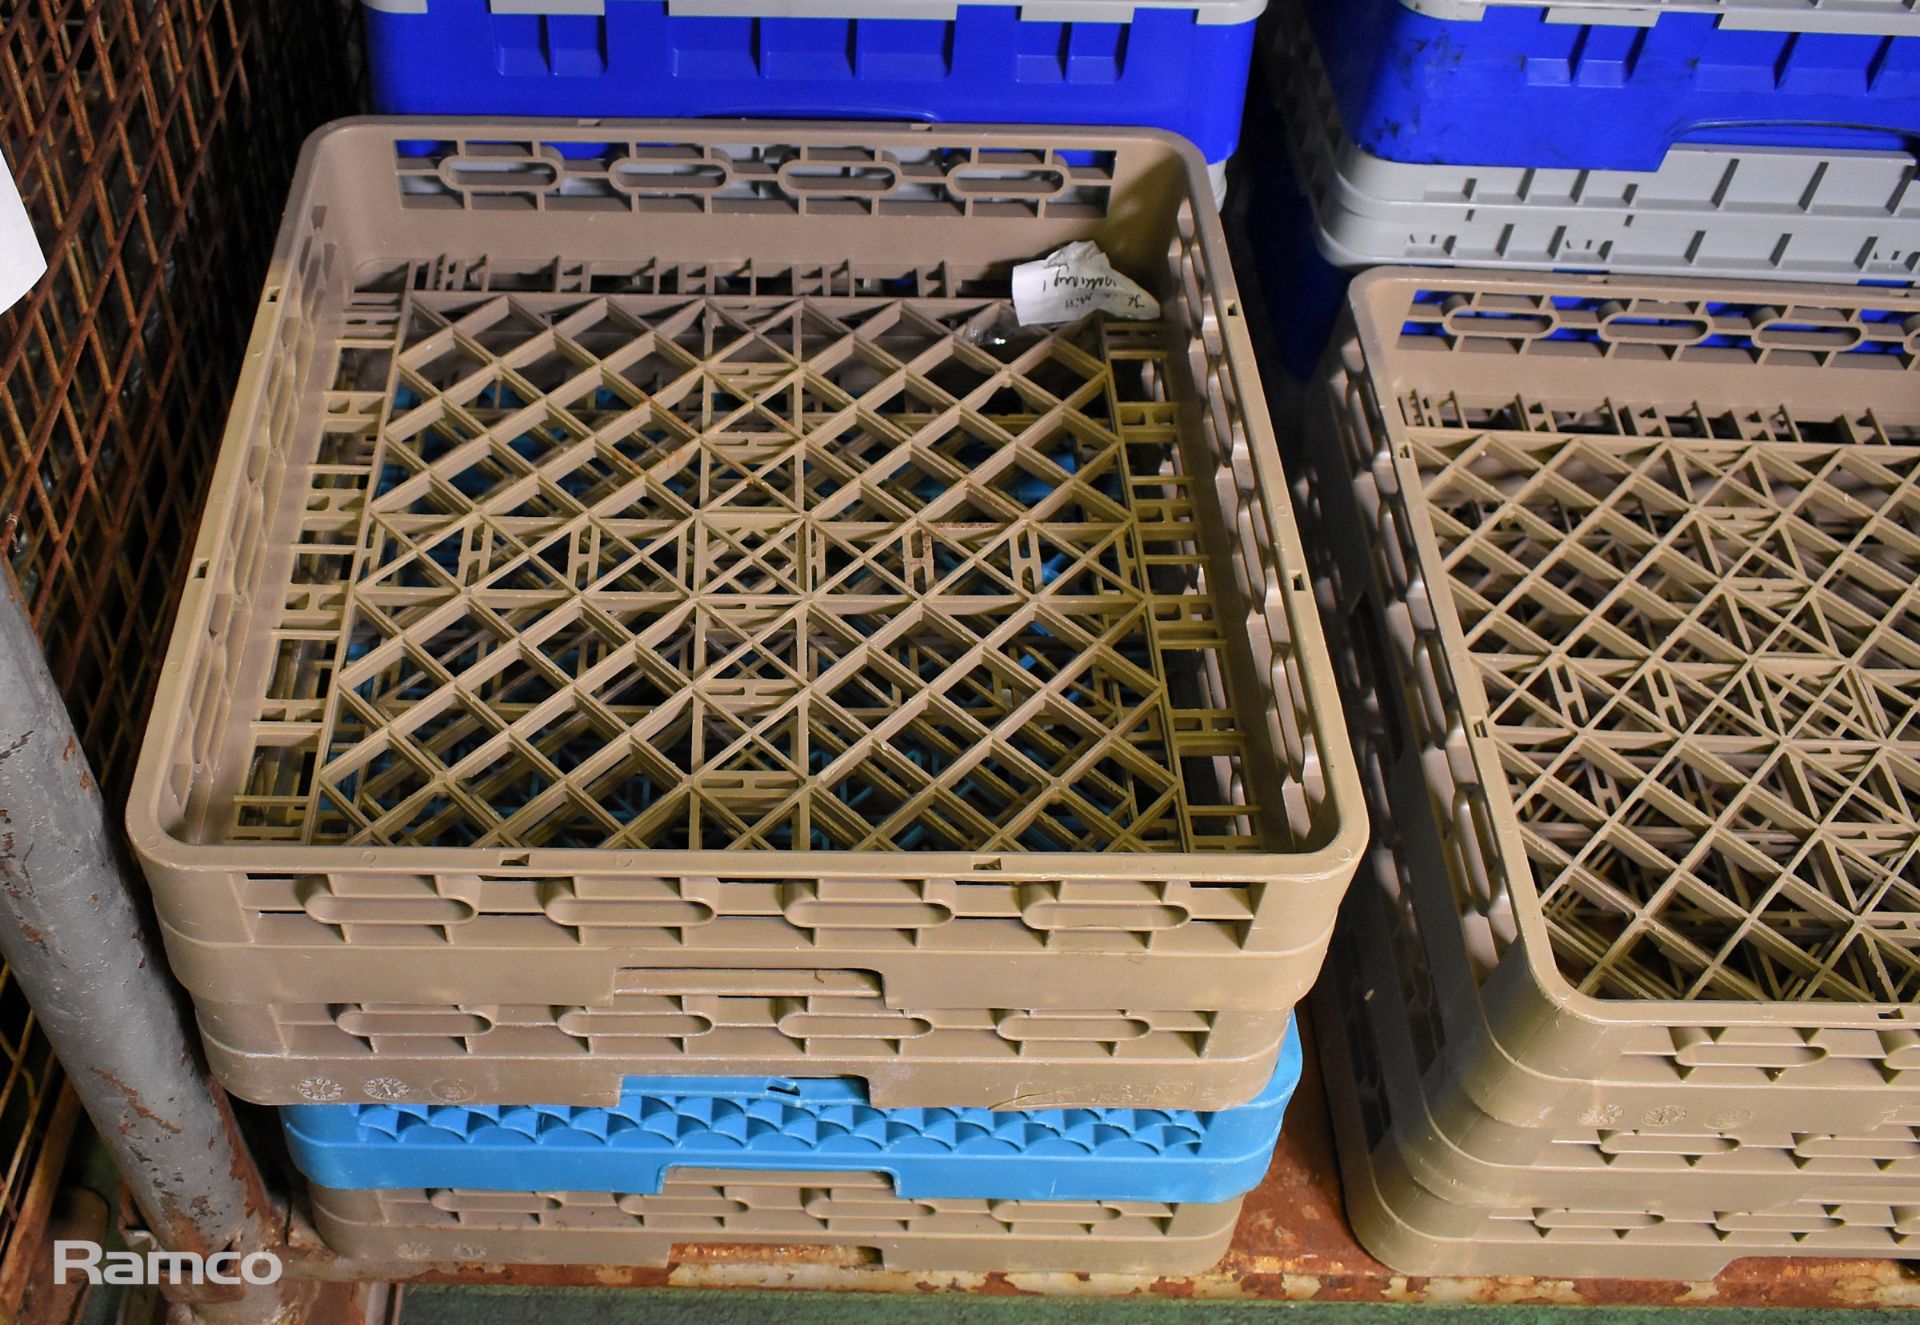 15x dishwasher trays - mixed types - Image 2 of 3